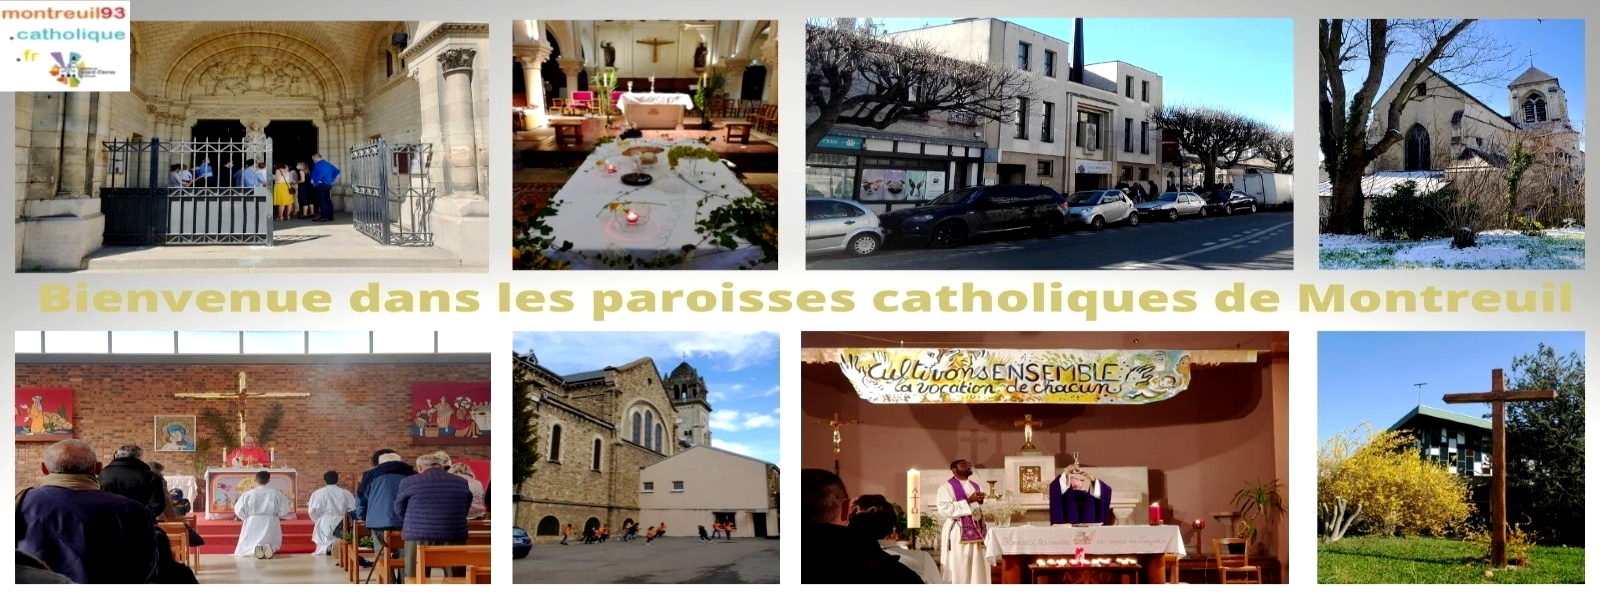 Paroisses catholiques de Montreuil